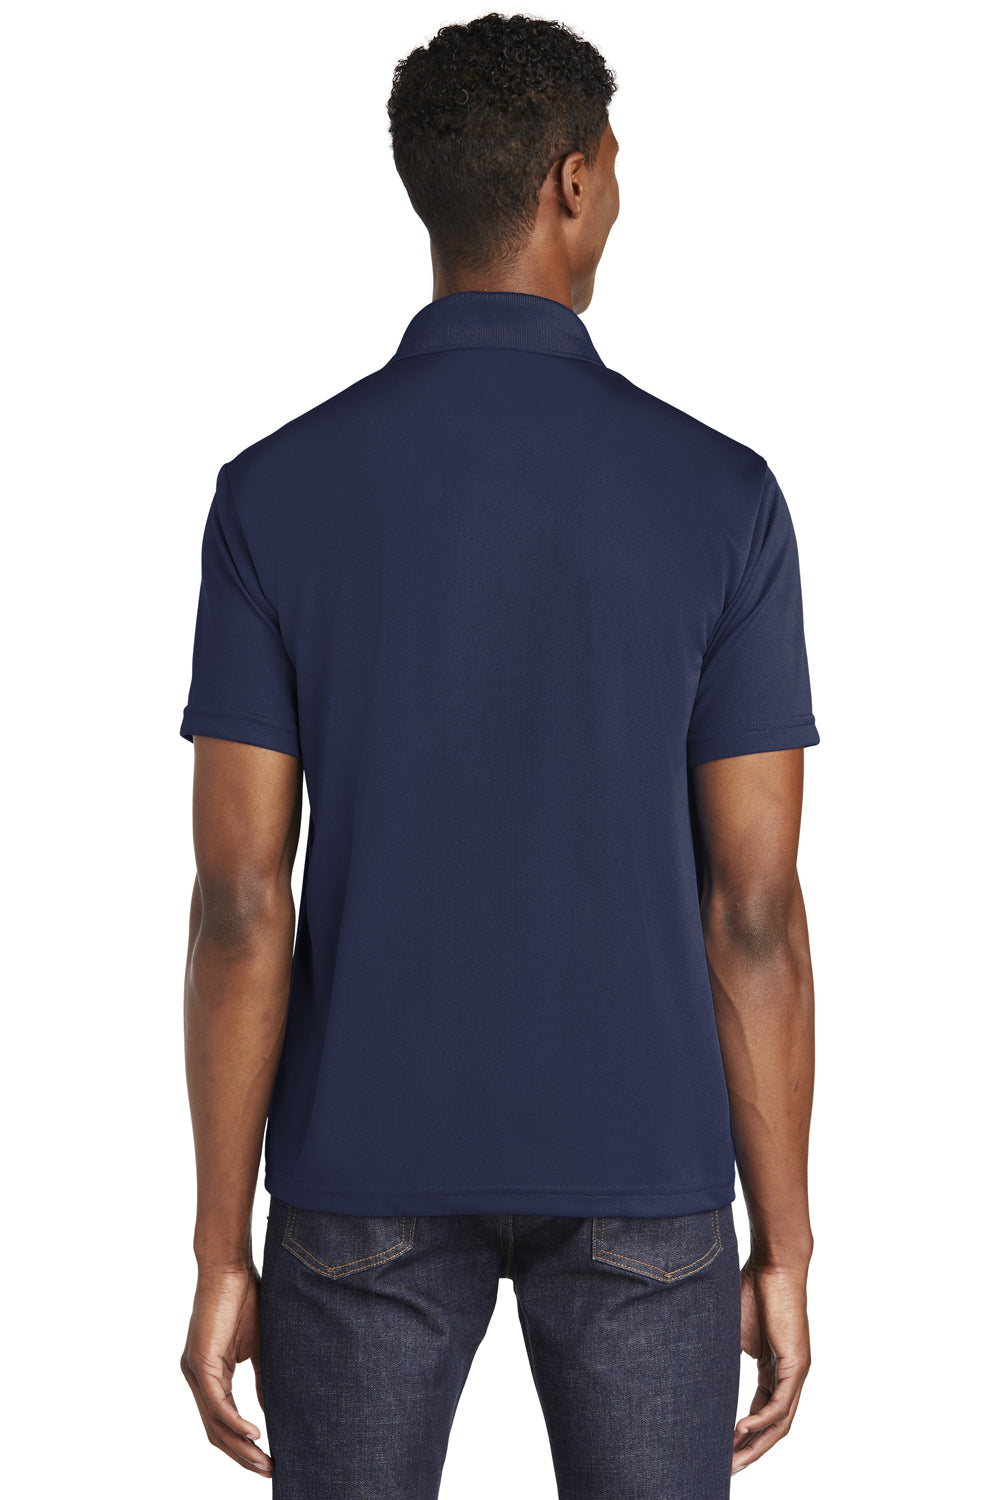 Sport-Tek ST640 Mens RacerMesh Moisture Wicking Short Sleeve Polo Shirt Navy Blue Back